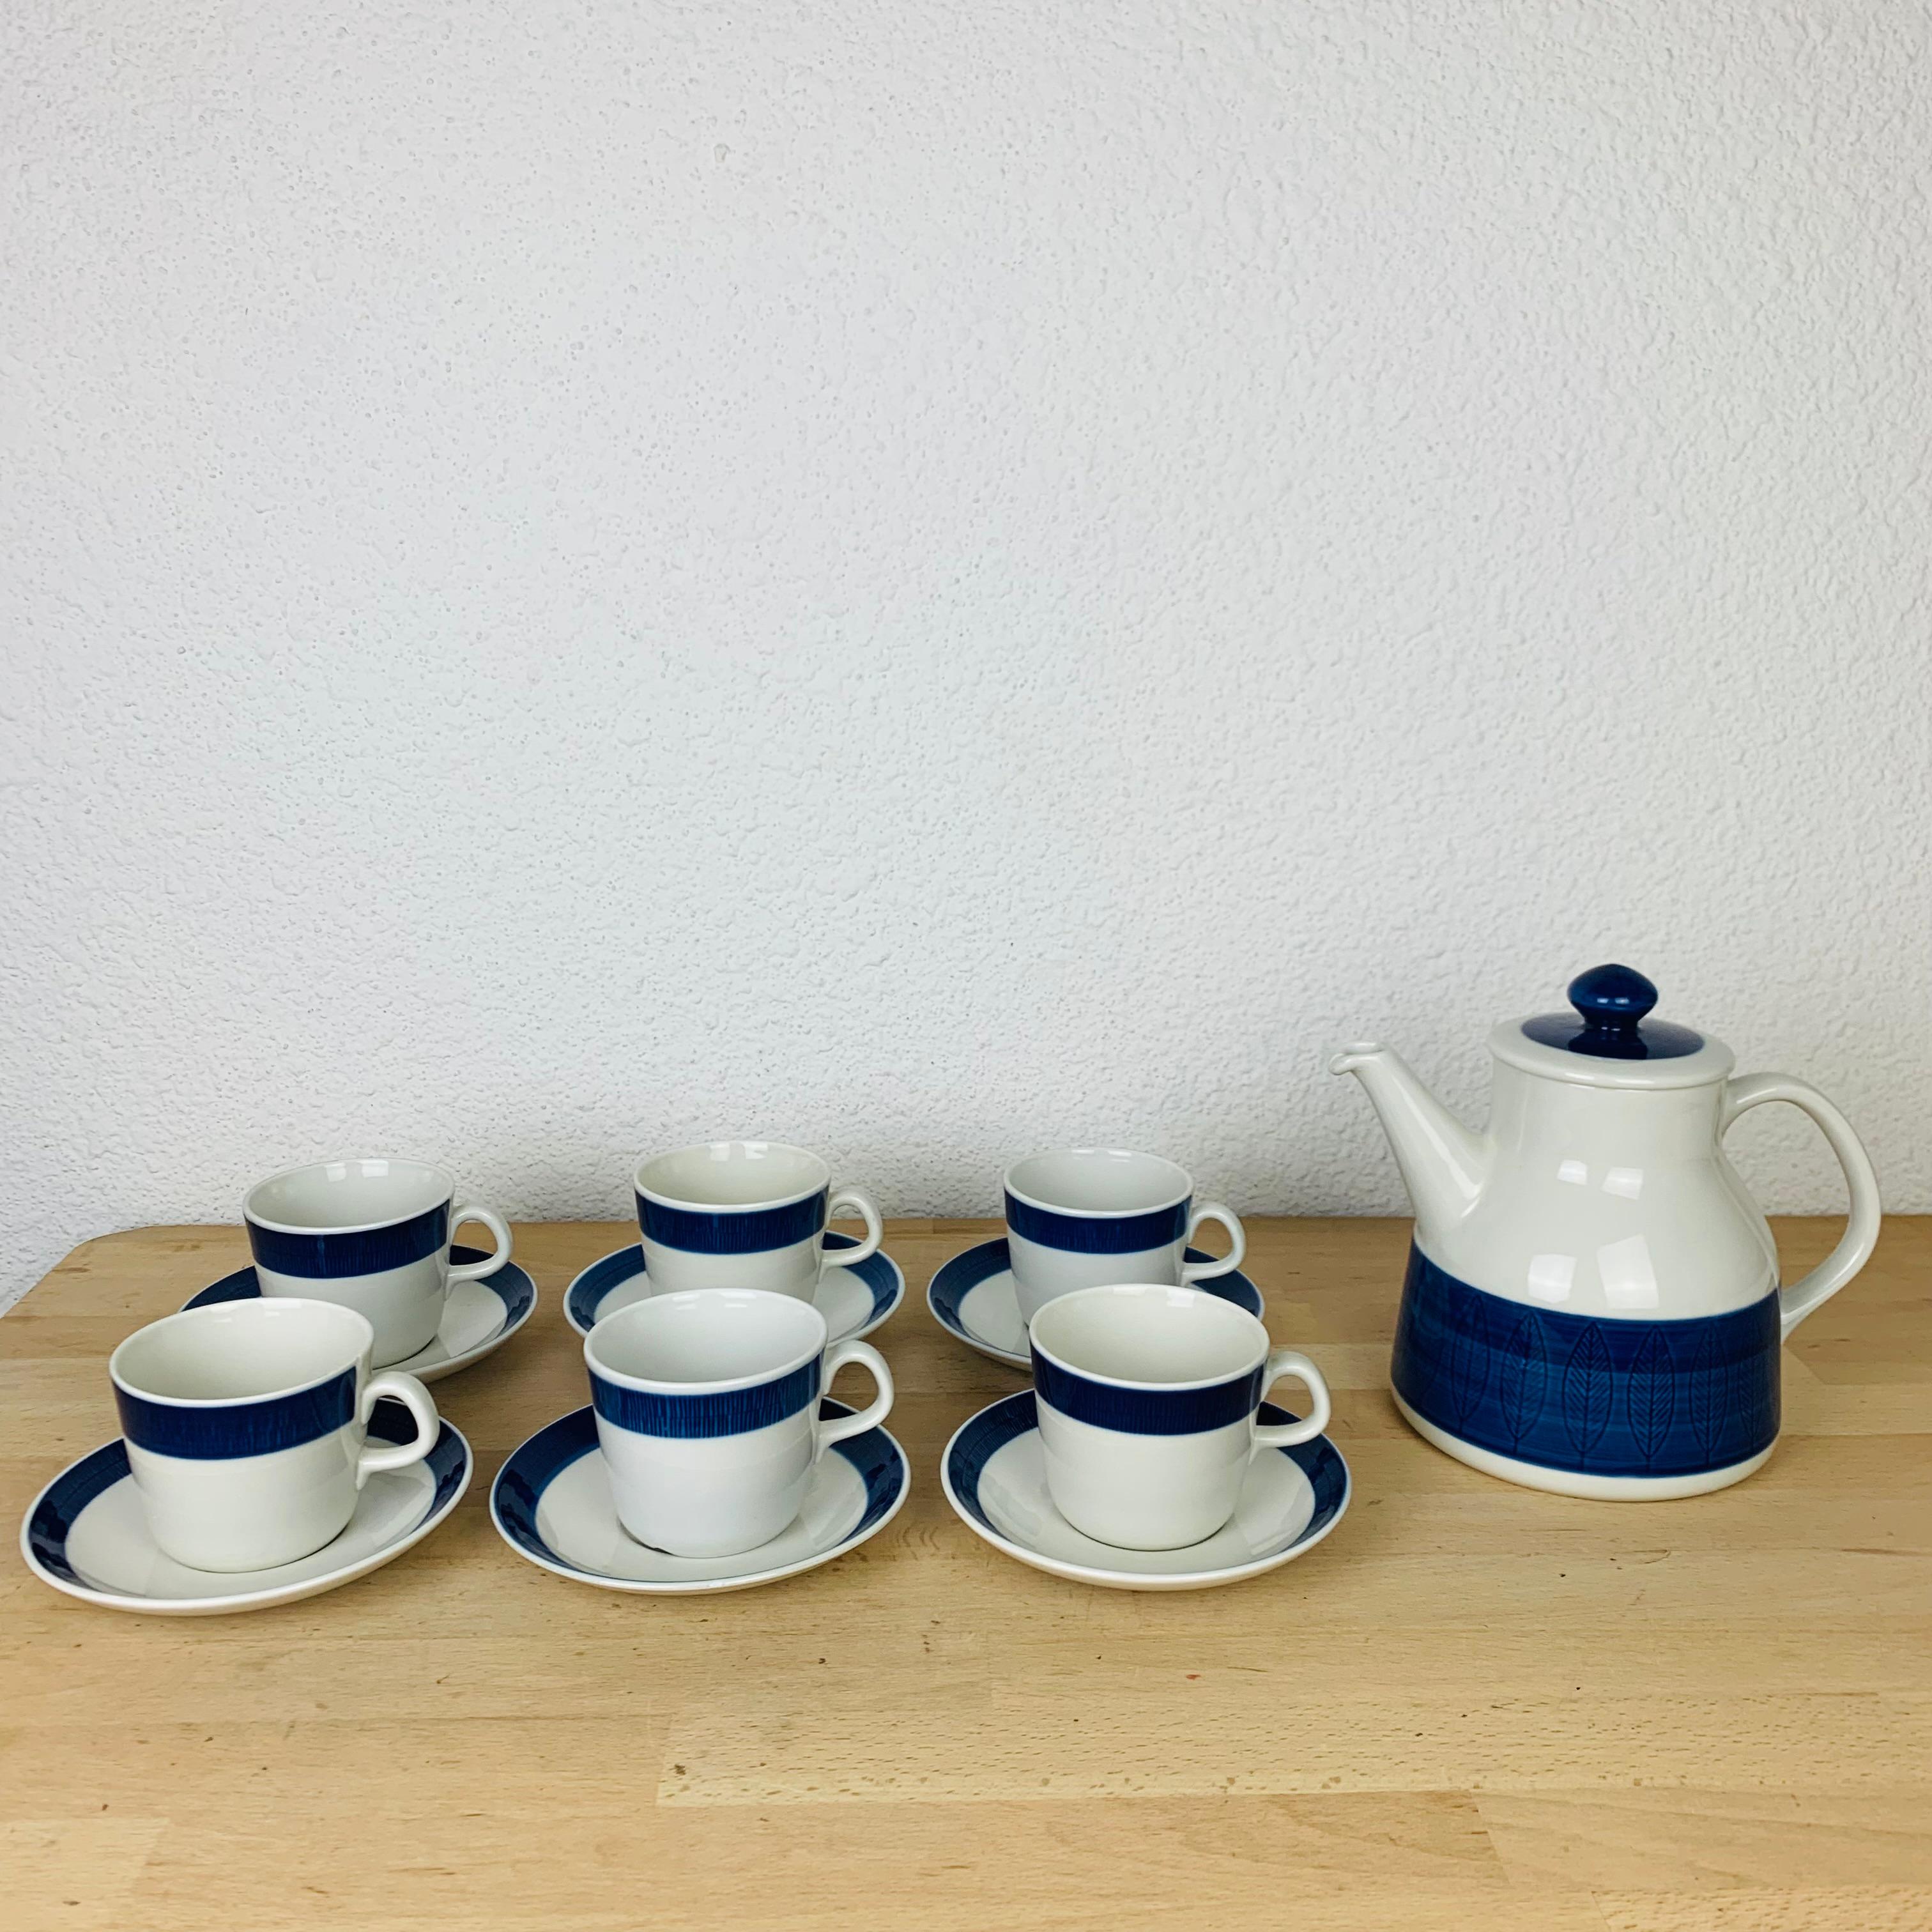 Koka Teeservice von Hertha Bengtson für Rörstrand Schweden, hergestellt in den 1960er Jahren. Dieses Set enthält eine Teekanne, sechs Tassen und sechs Untertassen. 

Leichte alters- und gebrauchsbedingte Abnutzung, kein Chip, kein Riss. 

Maße der